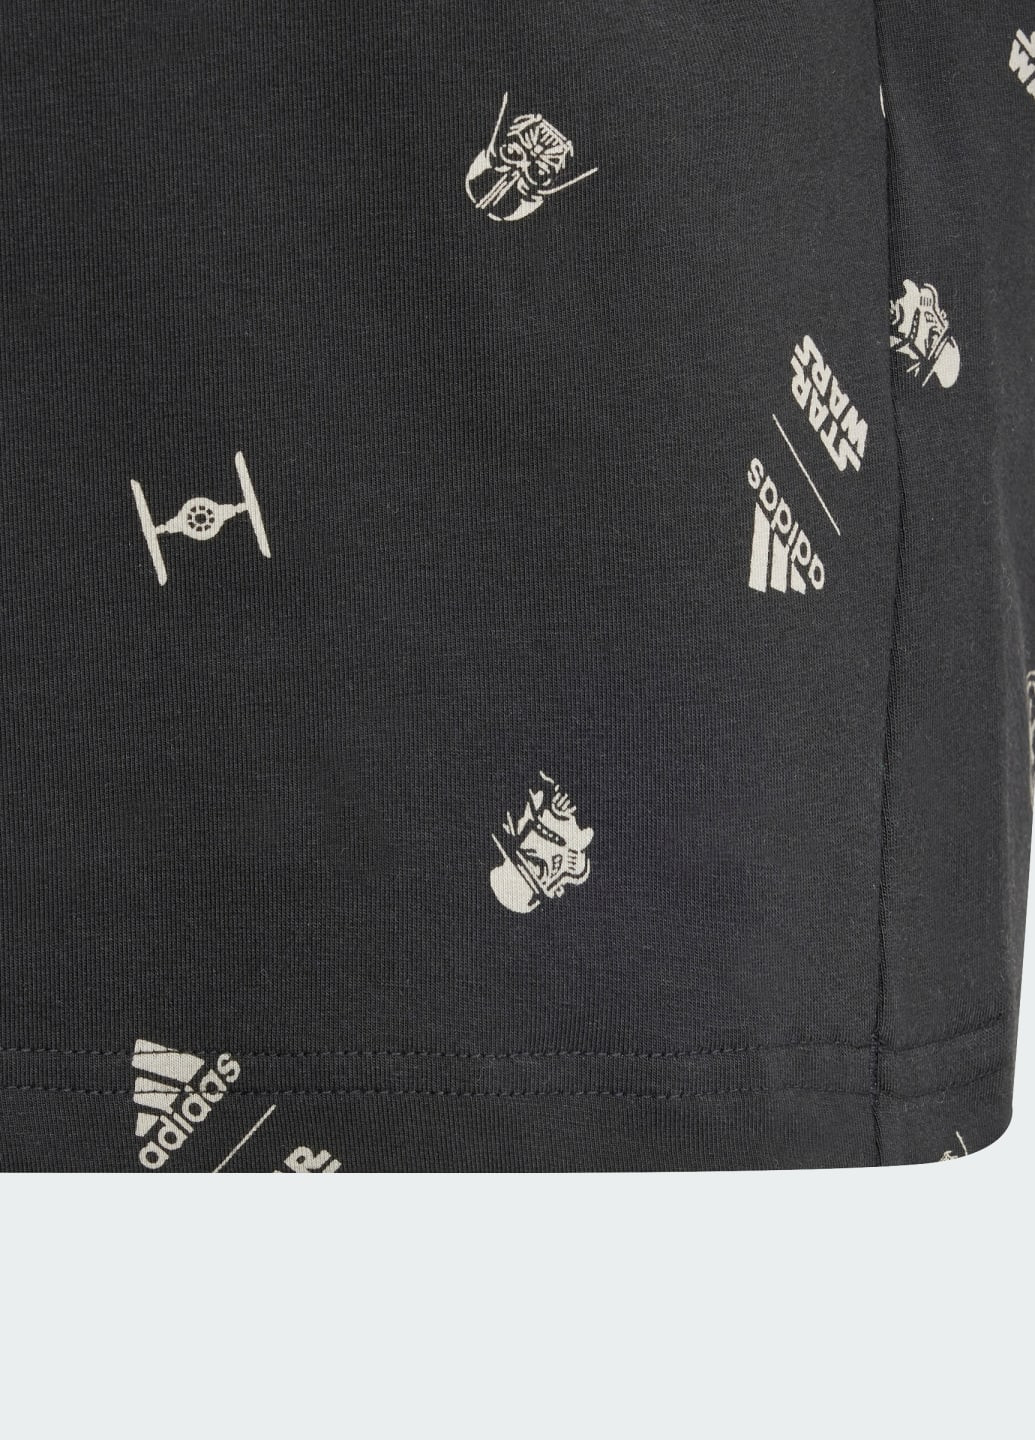 Чорна демісезонна футболка x star wars z.n.e. adidas